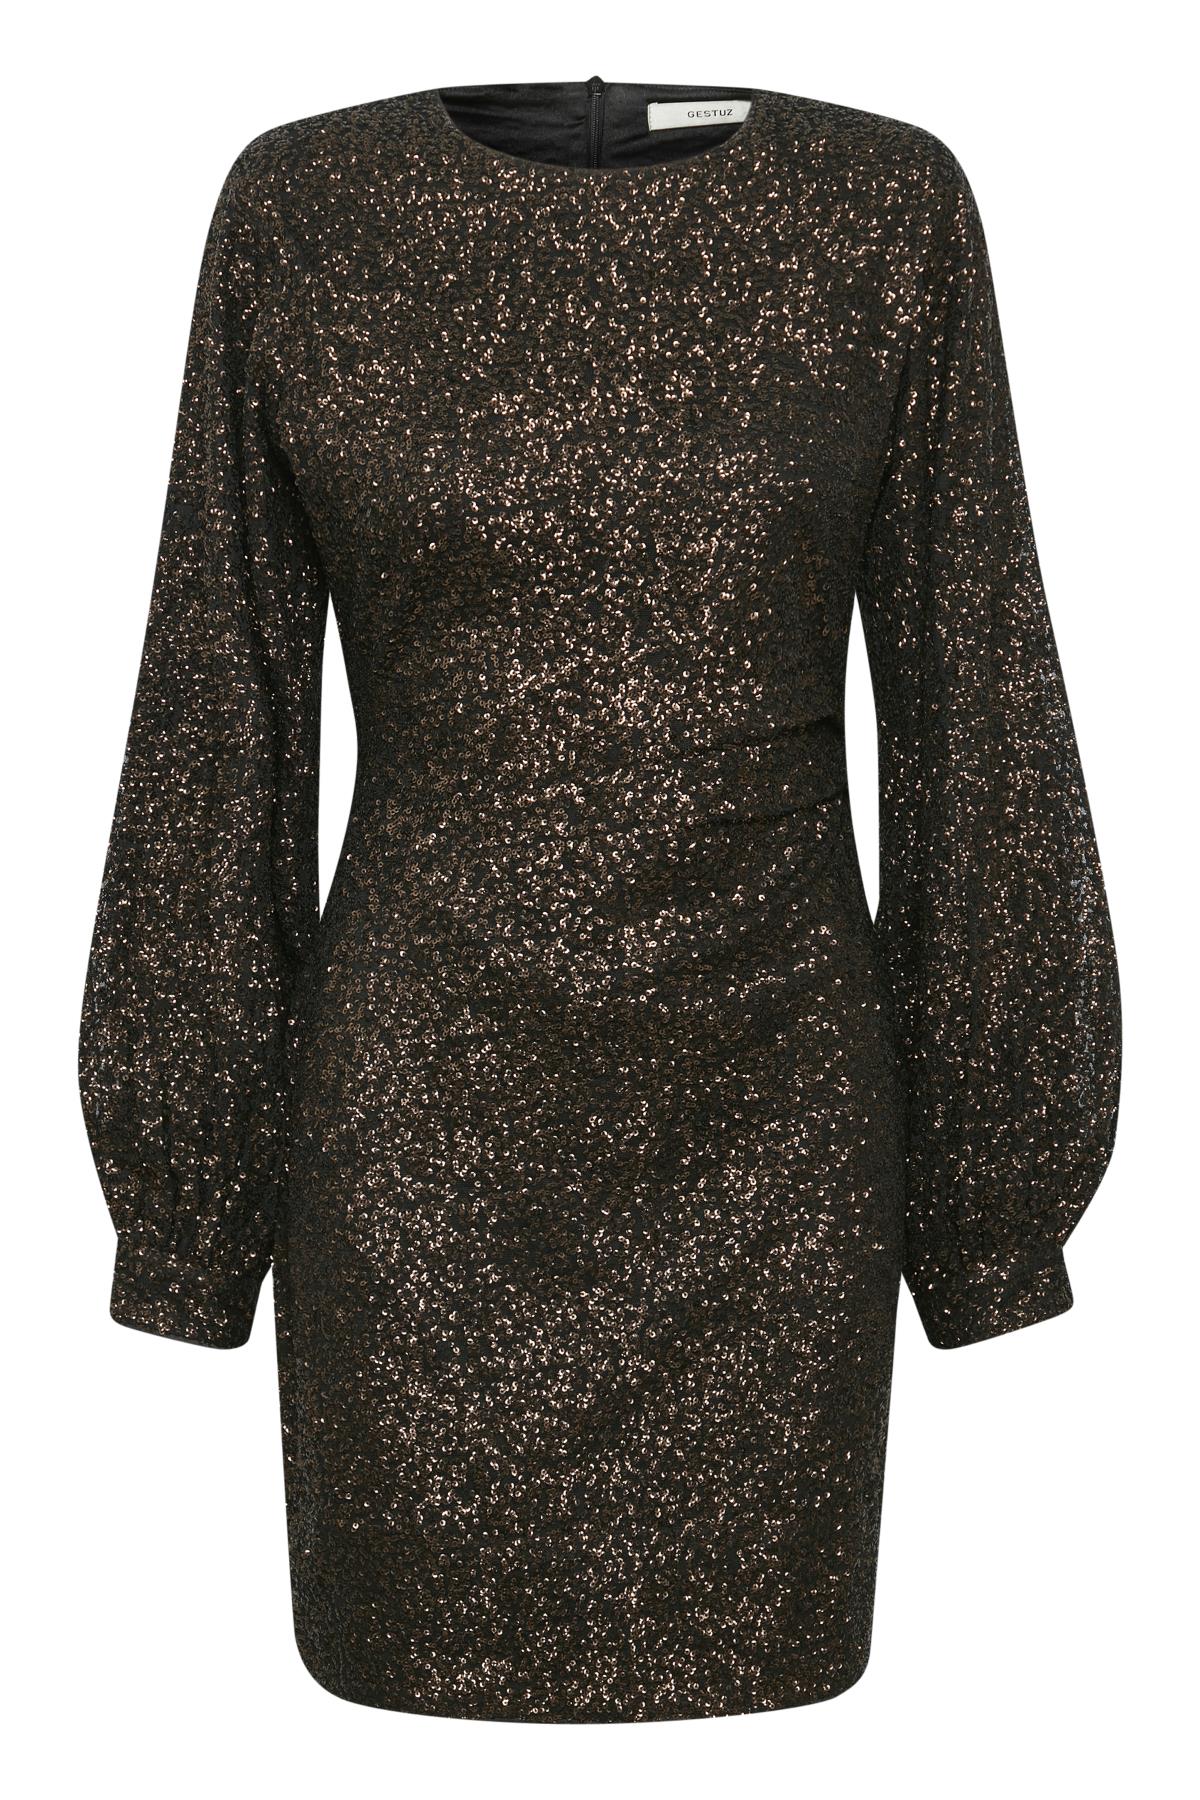 ClorisGZ Short Dress - Carafe Sequins